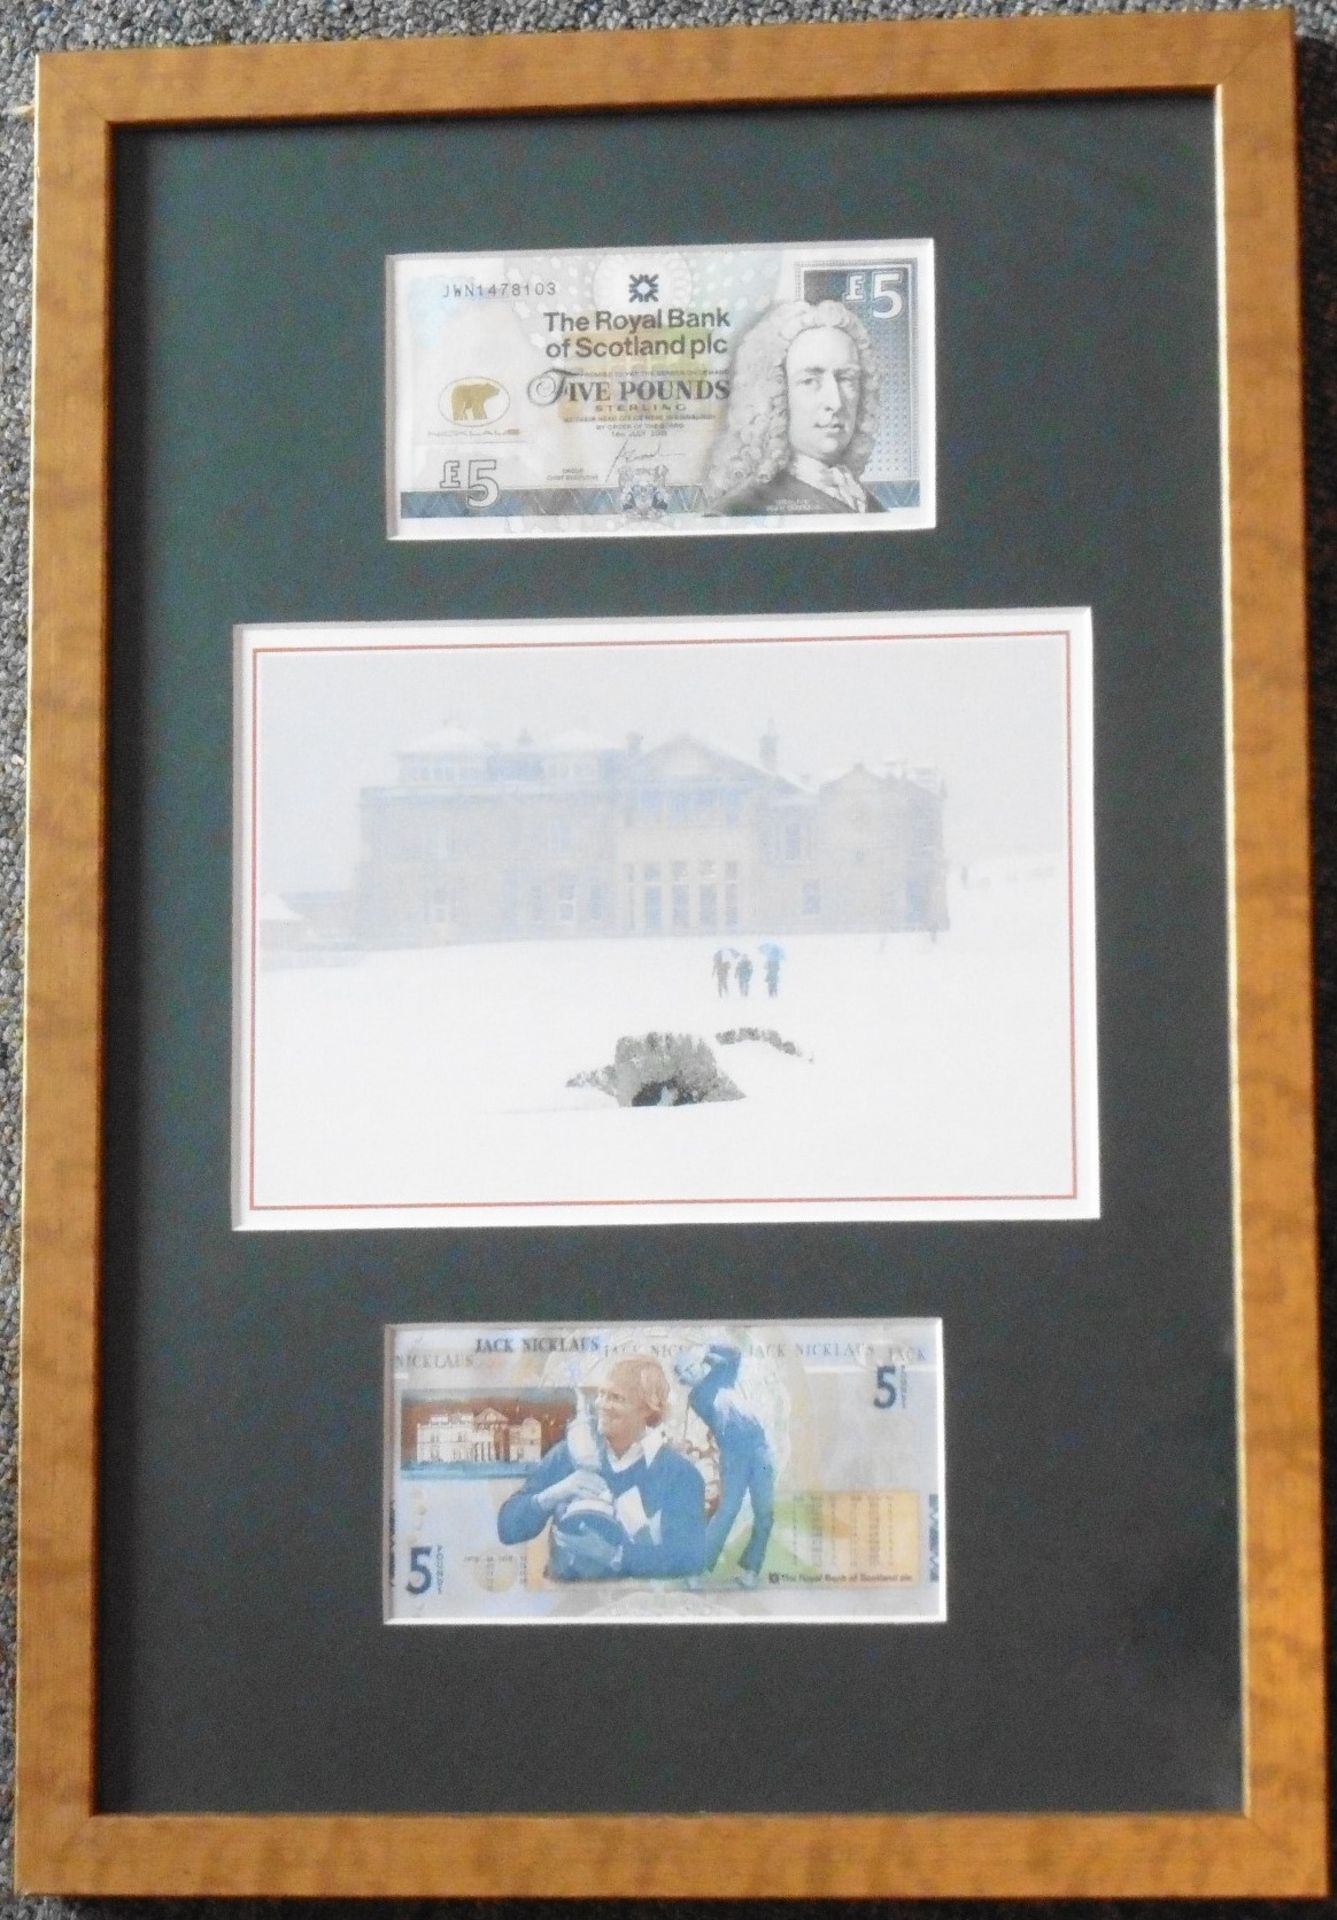 Jack Nicklaus Royal bank of Scotland framed £5 notes, Frame 18” x 12.5” - Image 2 of 4